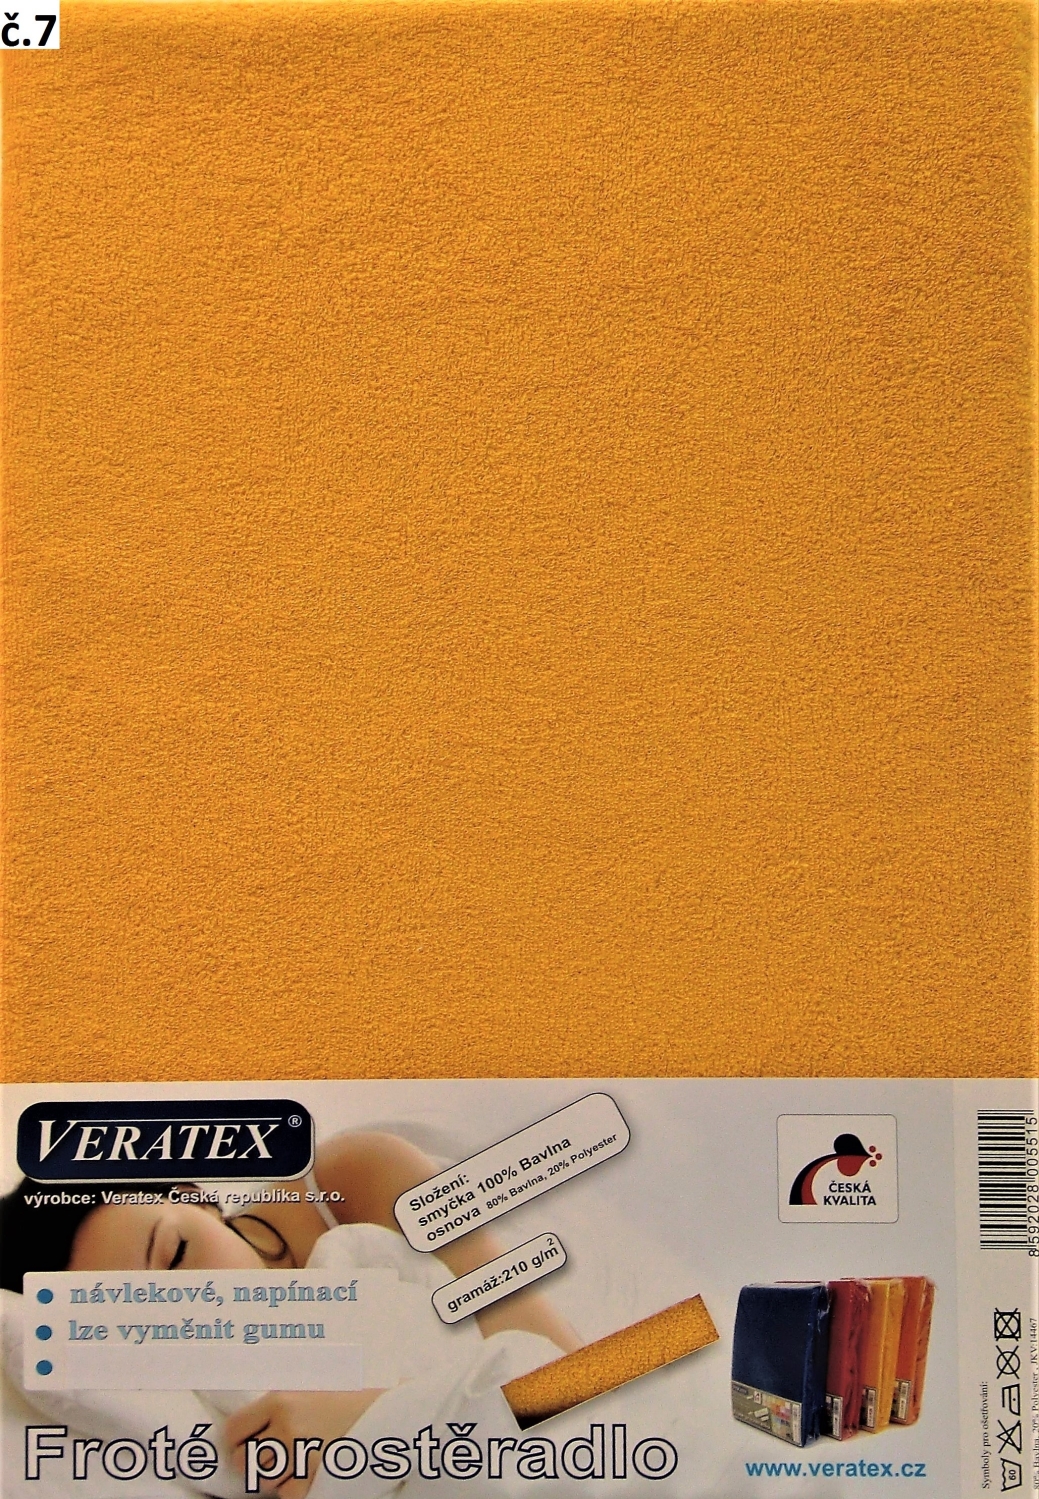 Veratex Froté prostěradlo 100x220/16 cm (č. 7-sytě žlutá)